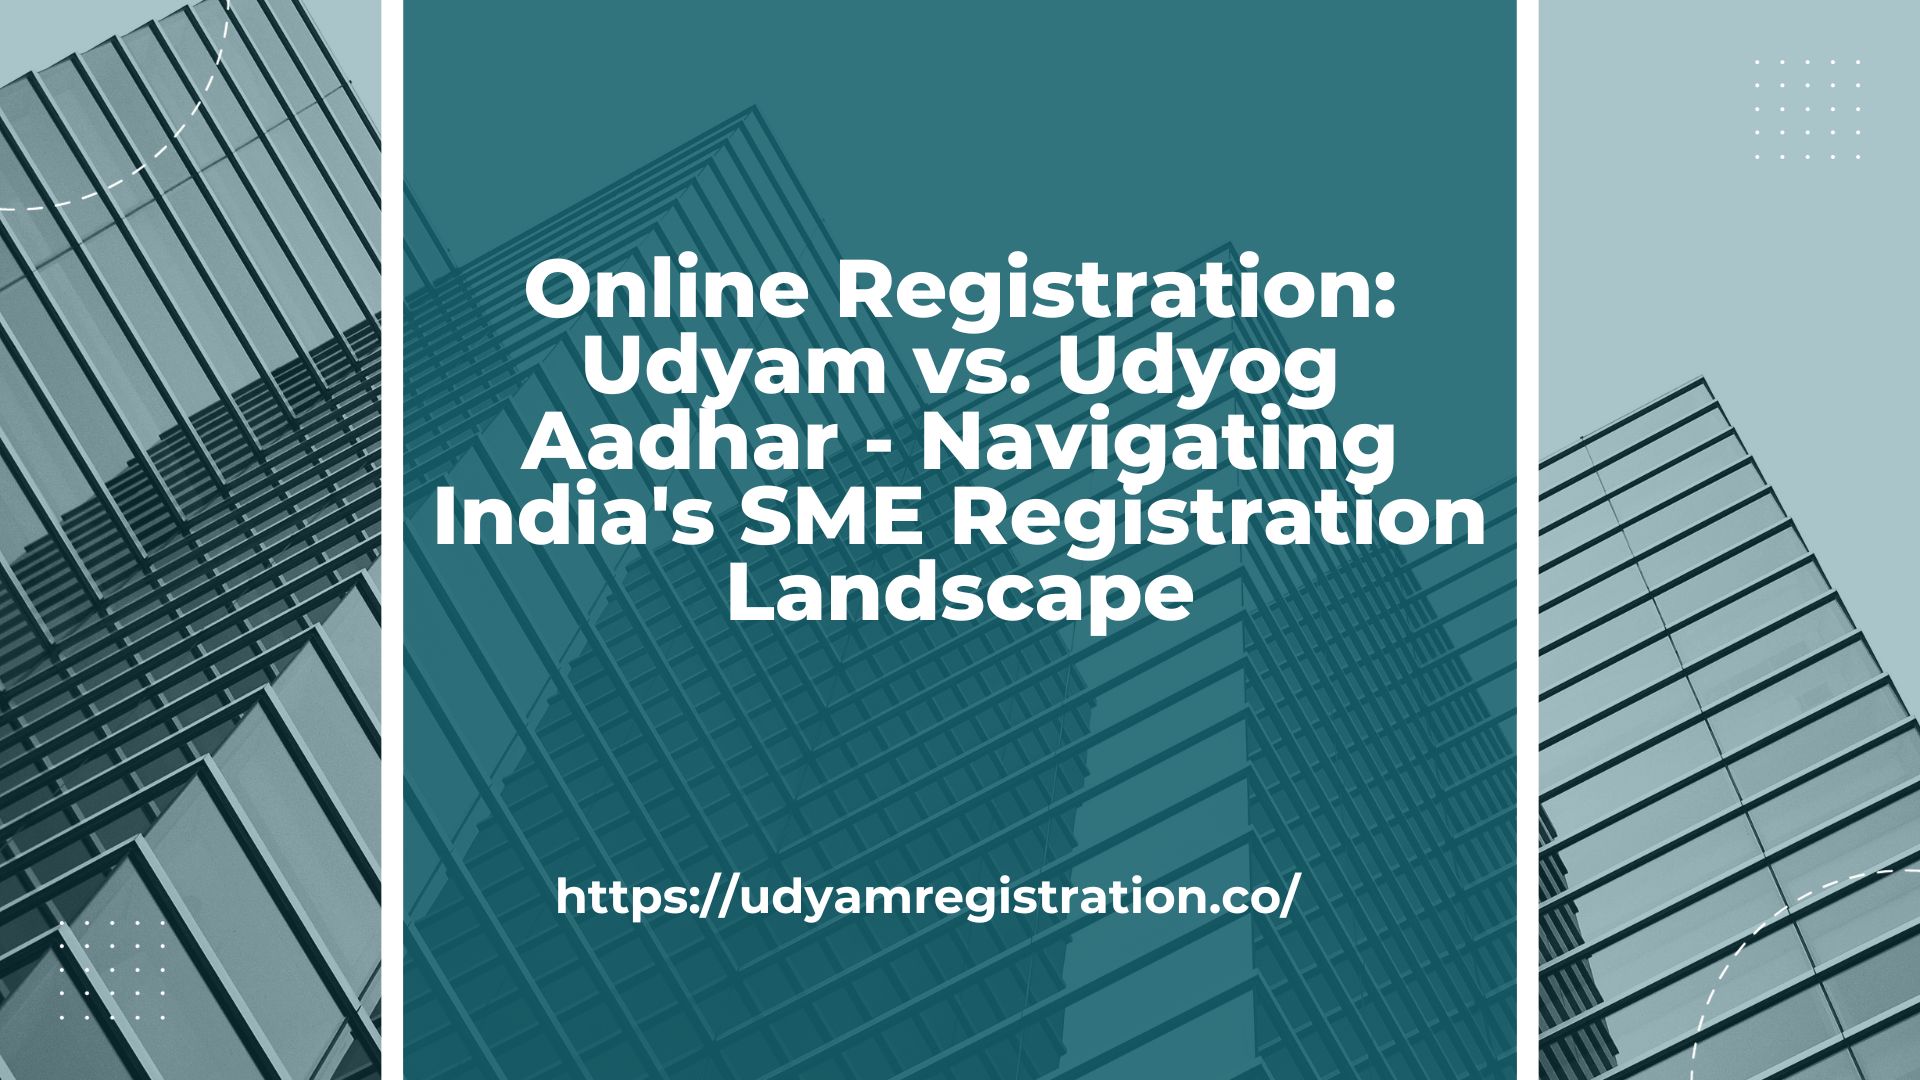 Online Registration: Udyam vs. Udyog Aadhar - Navigating India's SME Registration Landscape